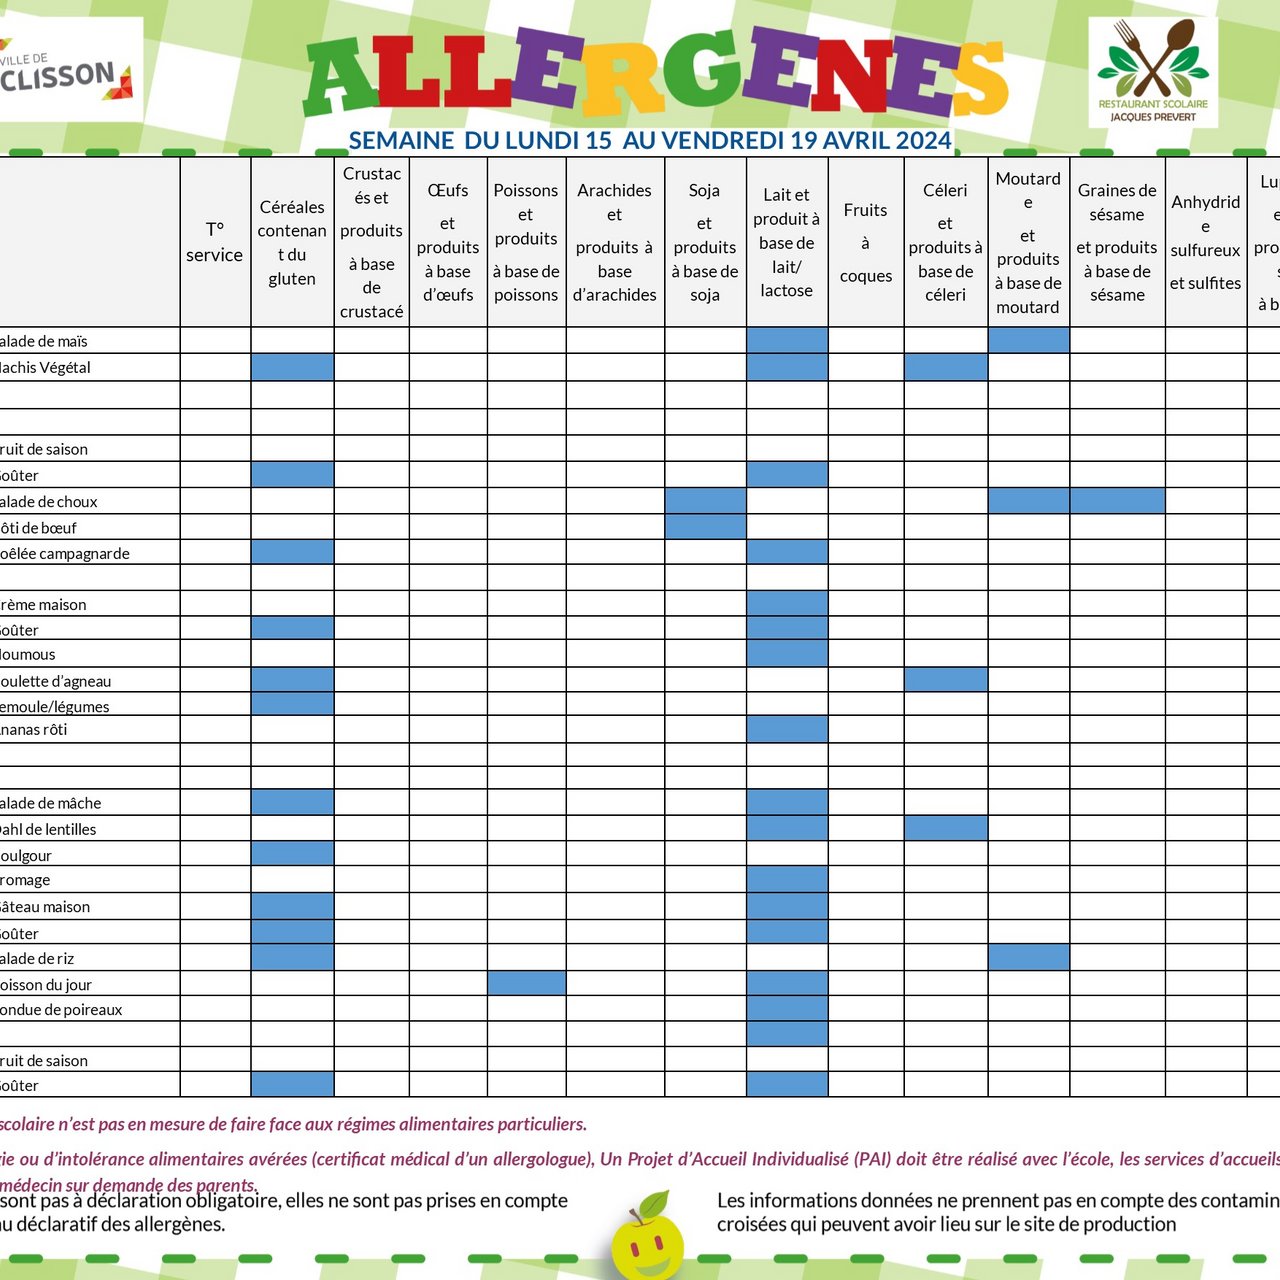 Allergènes - Semaine du 15 au 19 avril